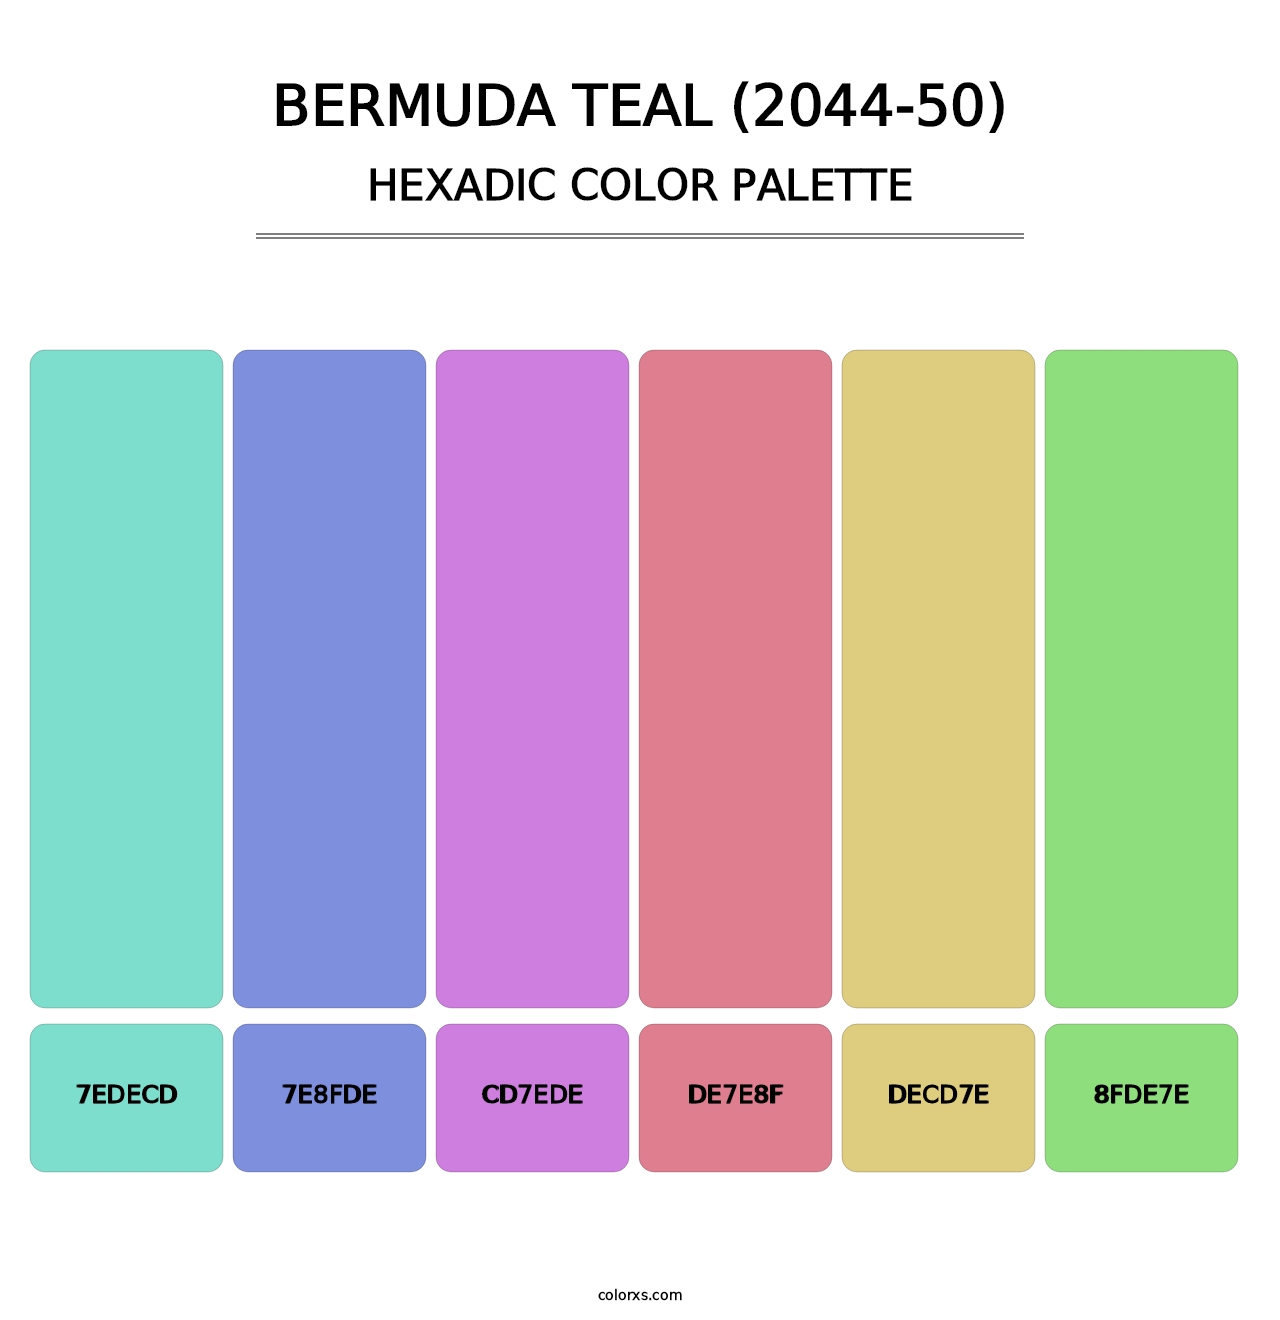 Bermuda Teal (2044-50) - Hexadic Color Palette